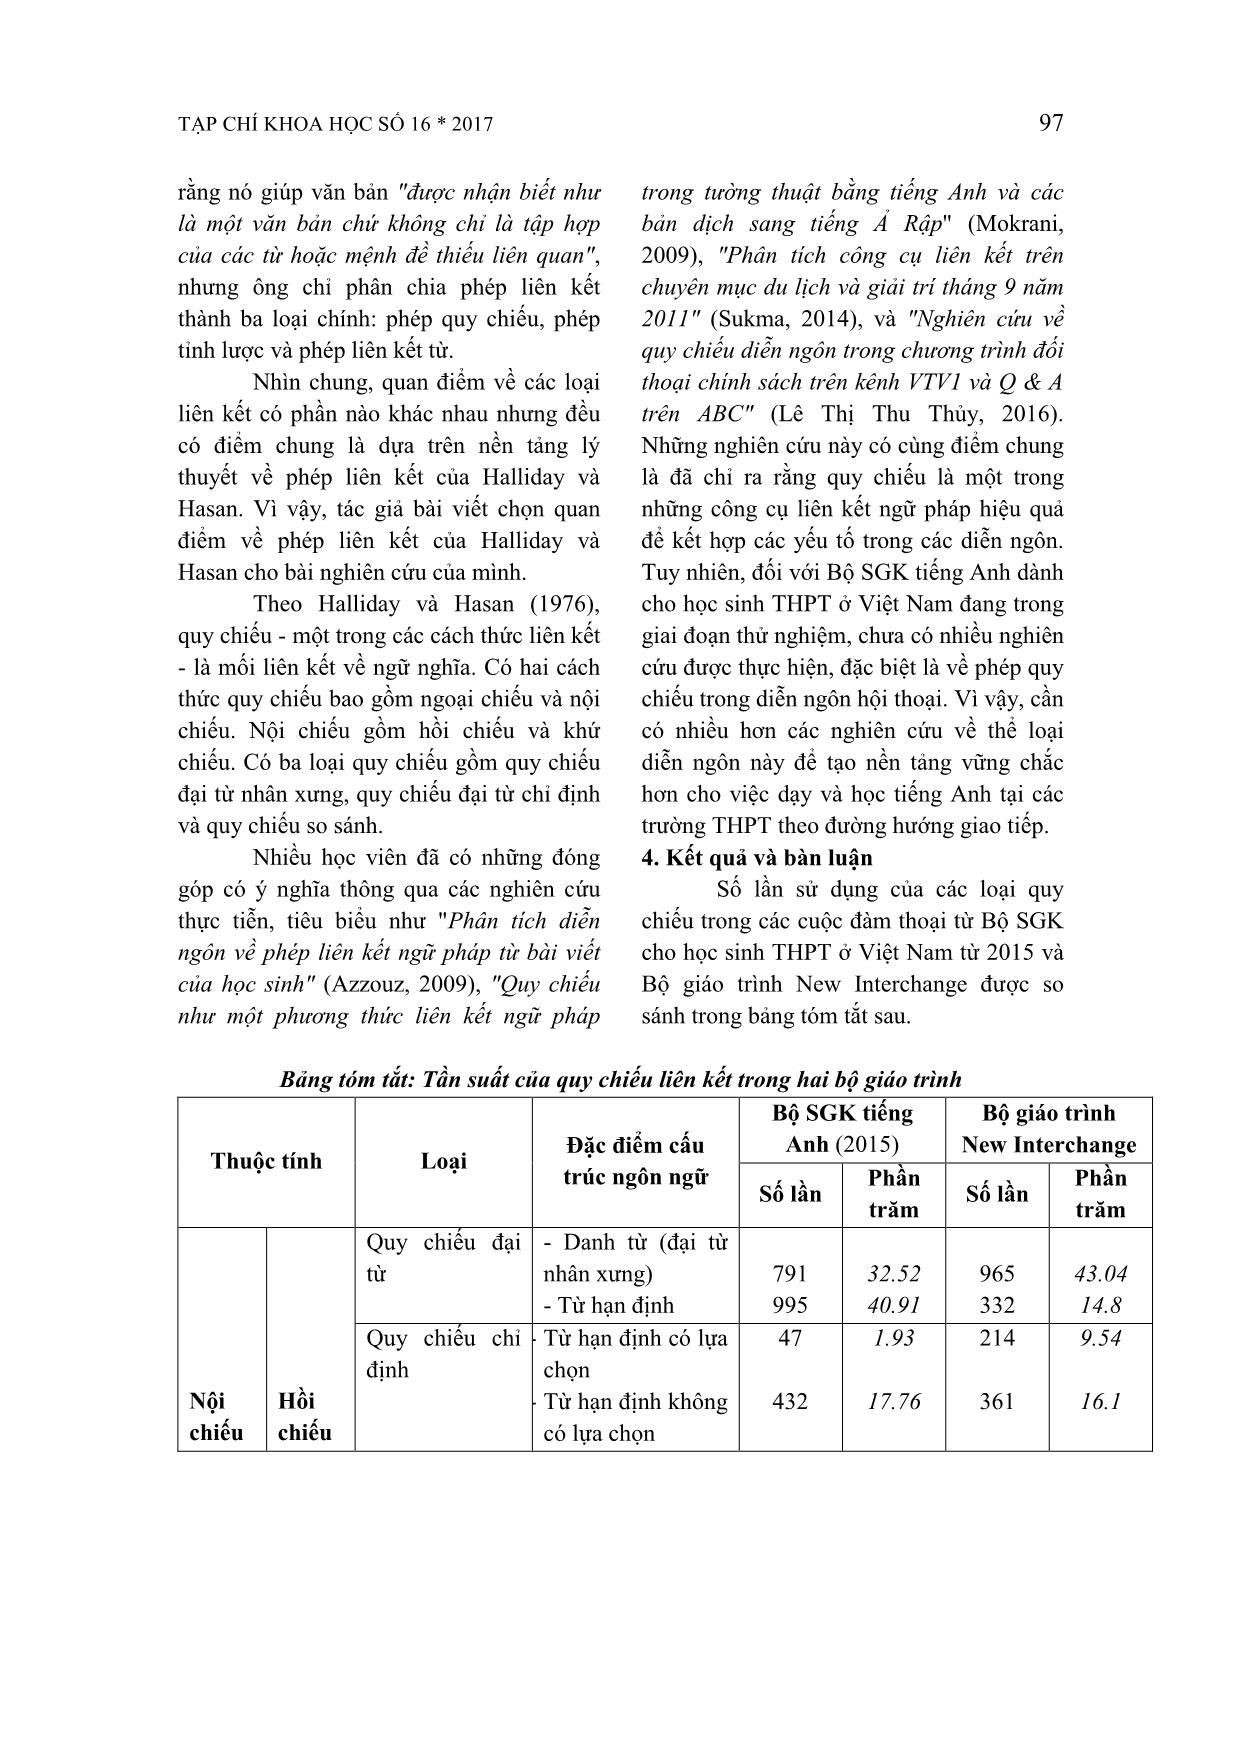 Những điểm giống và khác nhau trong cách sử dụng phép quy chiếu trong diễn ngôn hội thoại giữa bộ sách giáo khoa tiếng Anh cho học sinh THPT ở Việt Nam (2015) và bộ giáo trình New Interchange trang 3